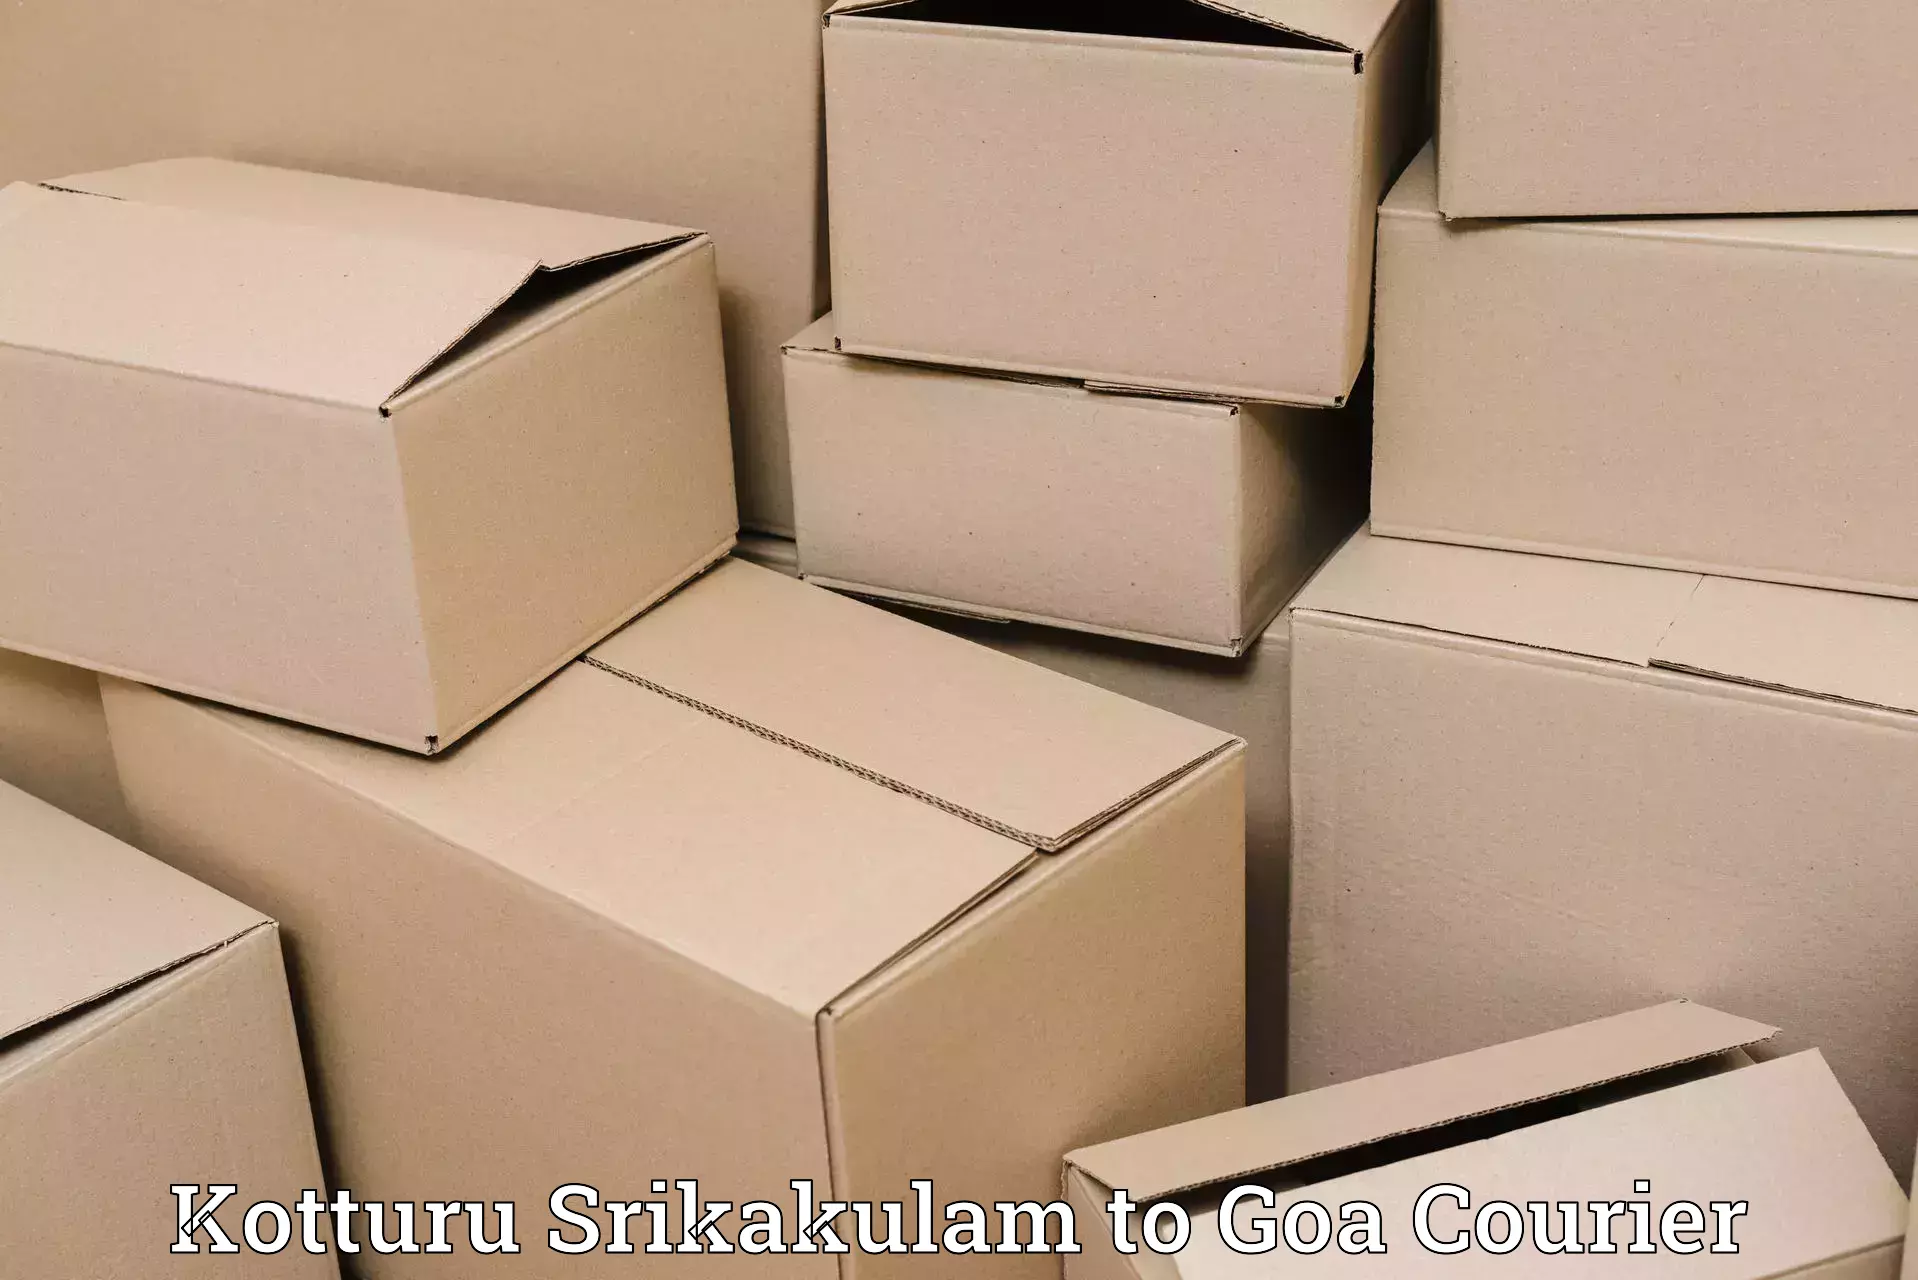 Secure freight services Kotturu Srikakulam to Goa